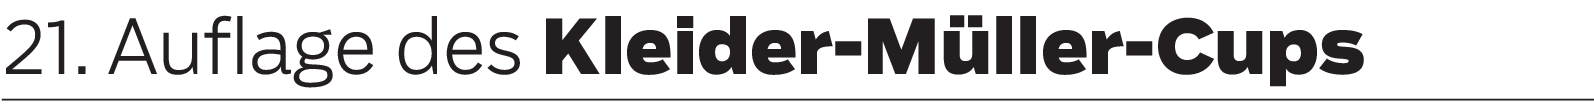 Kleider-Müller-Cup in Geislingen: Budenzauber vom Feinsten